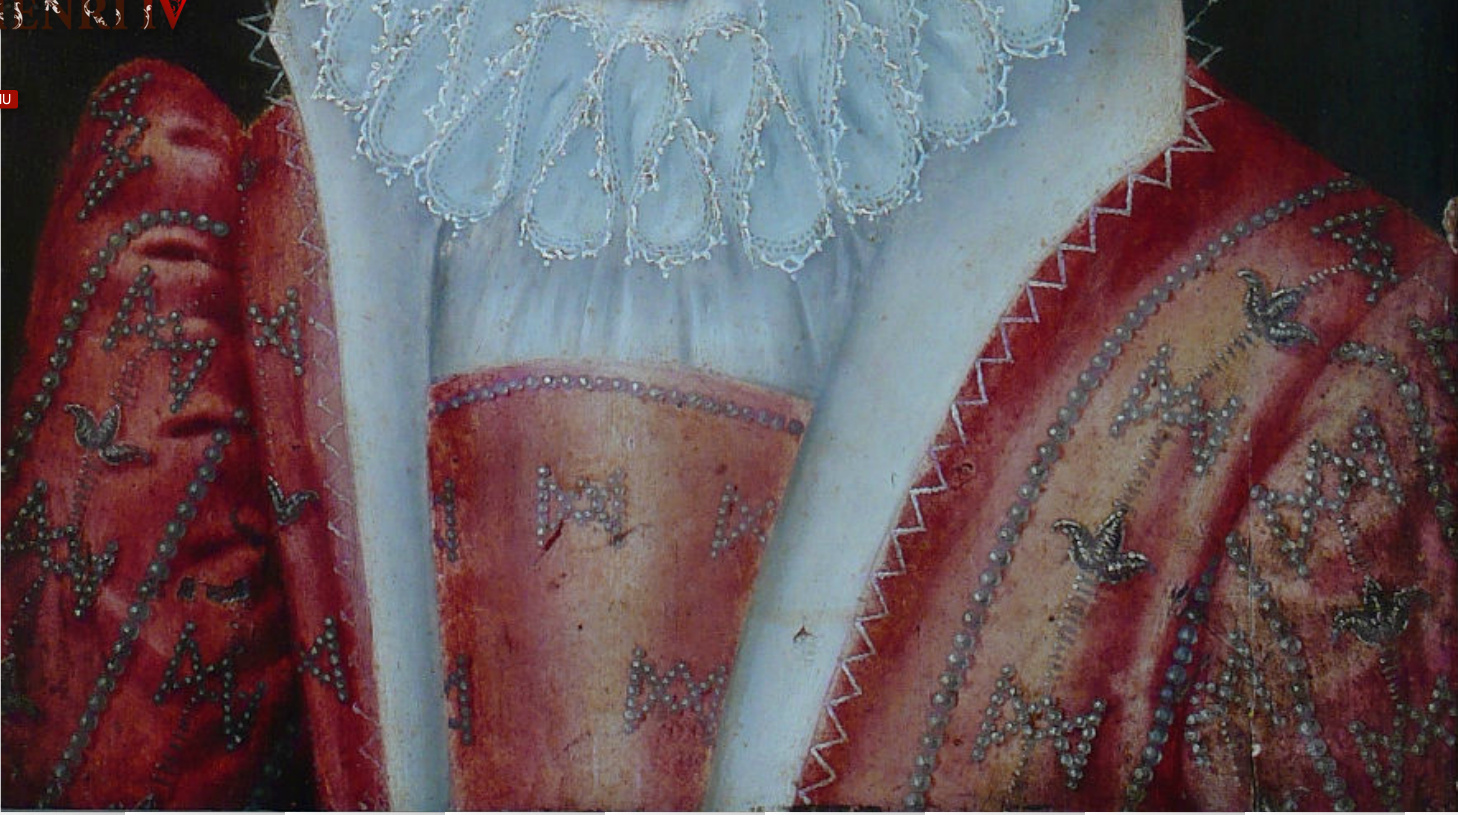 1572 (approx) - Marguerite De Valois